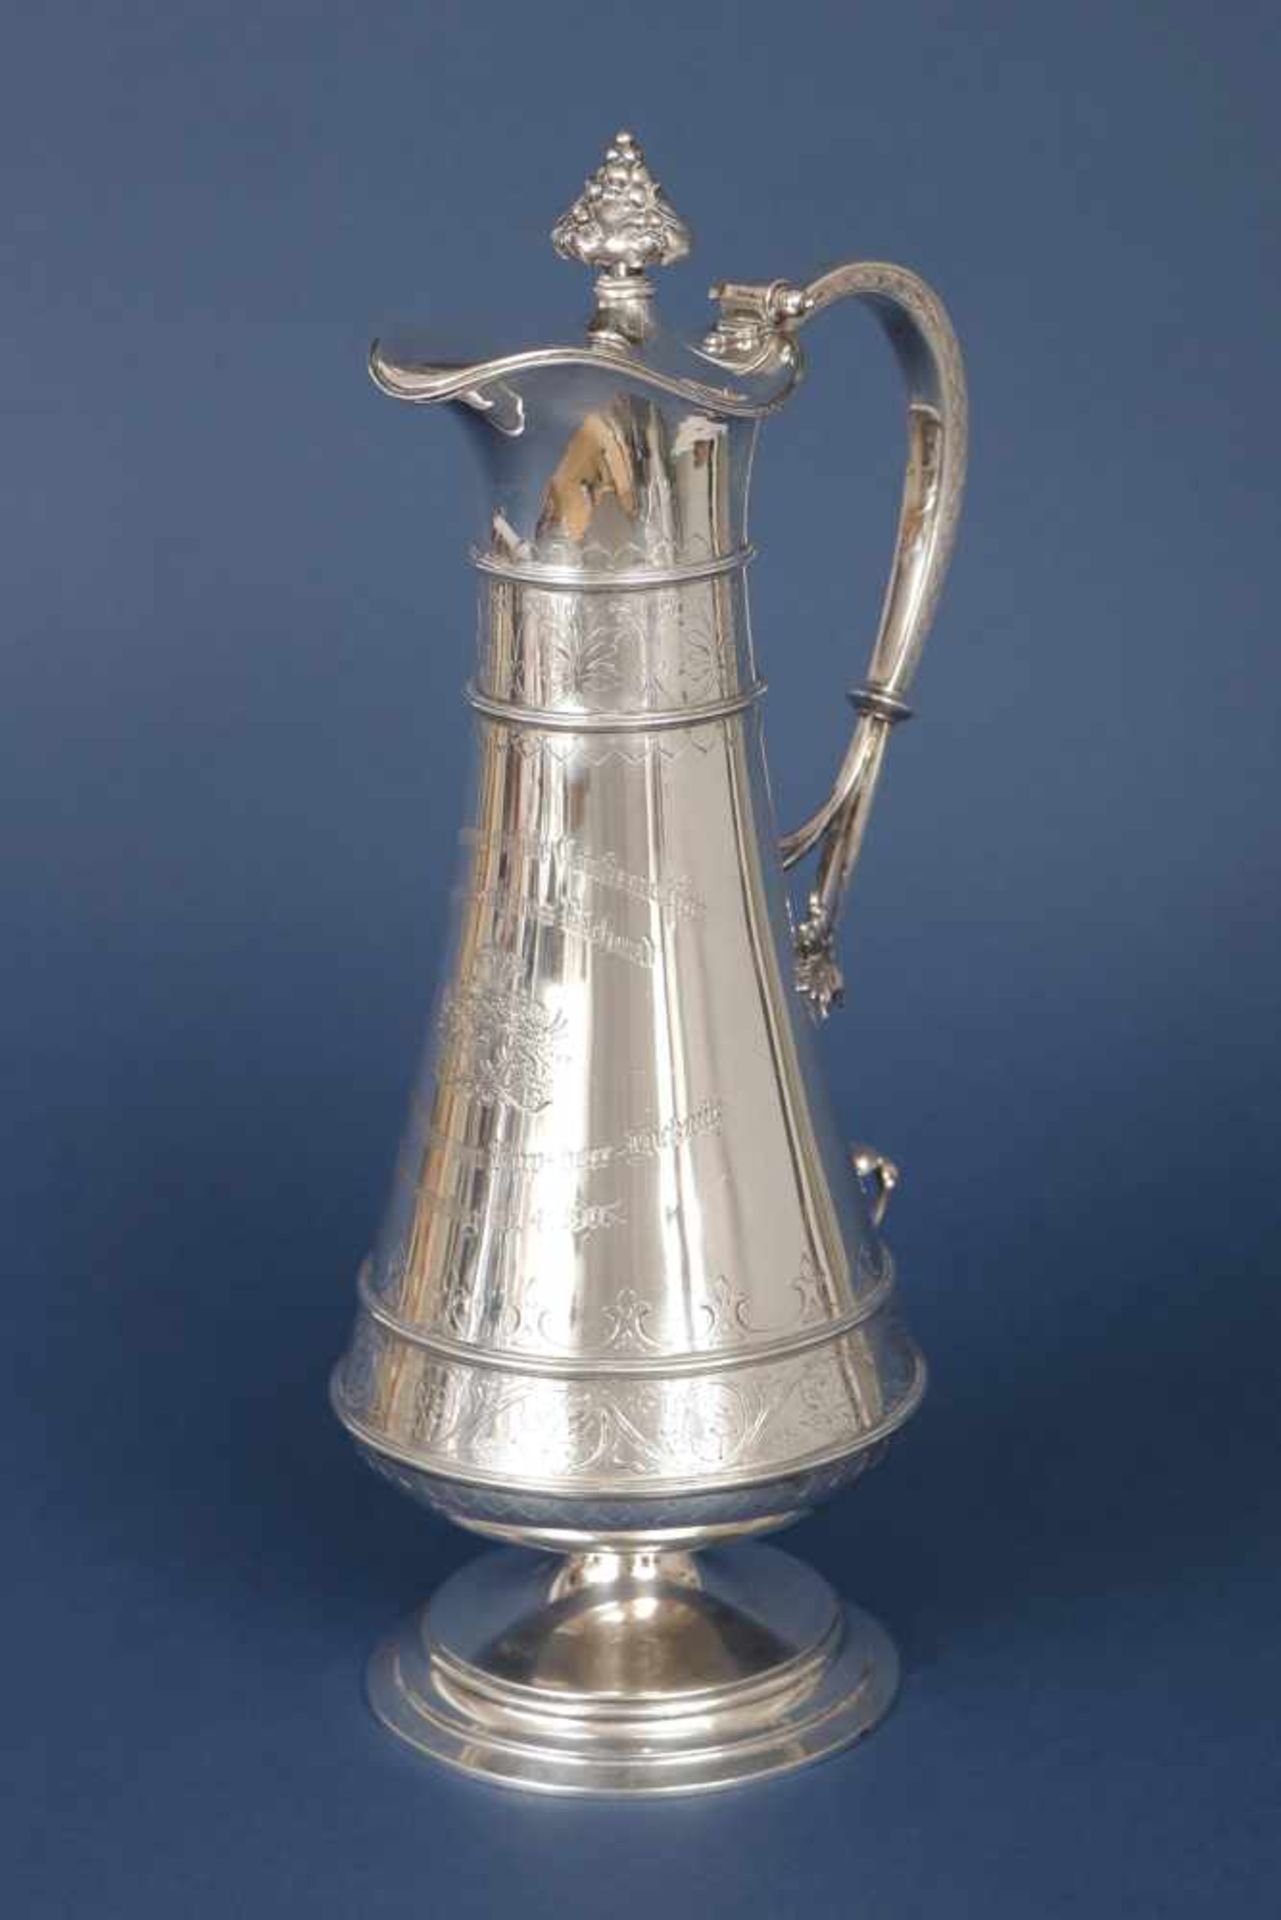 Großer Schenkkrug/Kanne800er Silber, Deutsch, um 1900, kegelförmiges Gefäß mit großem Griff in